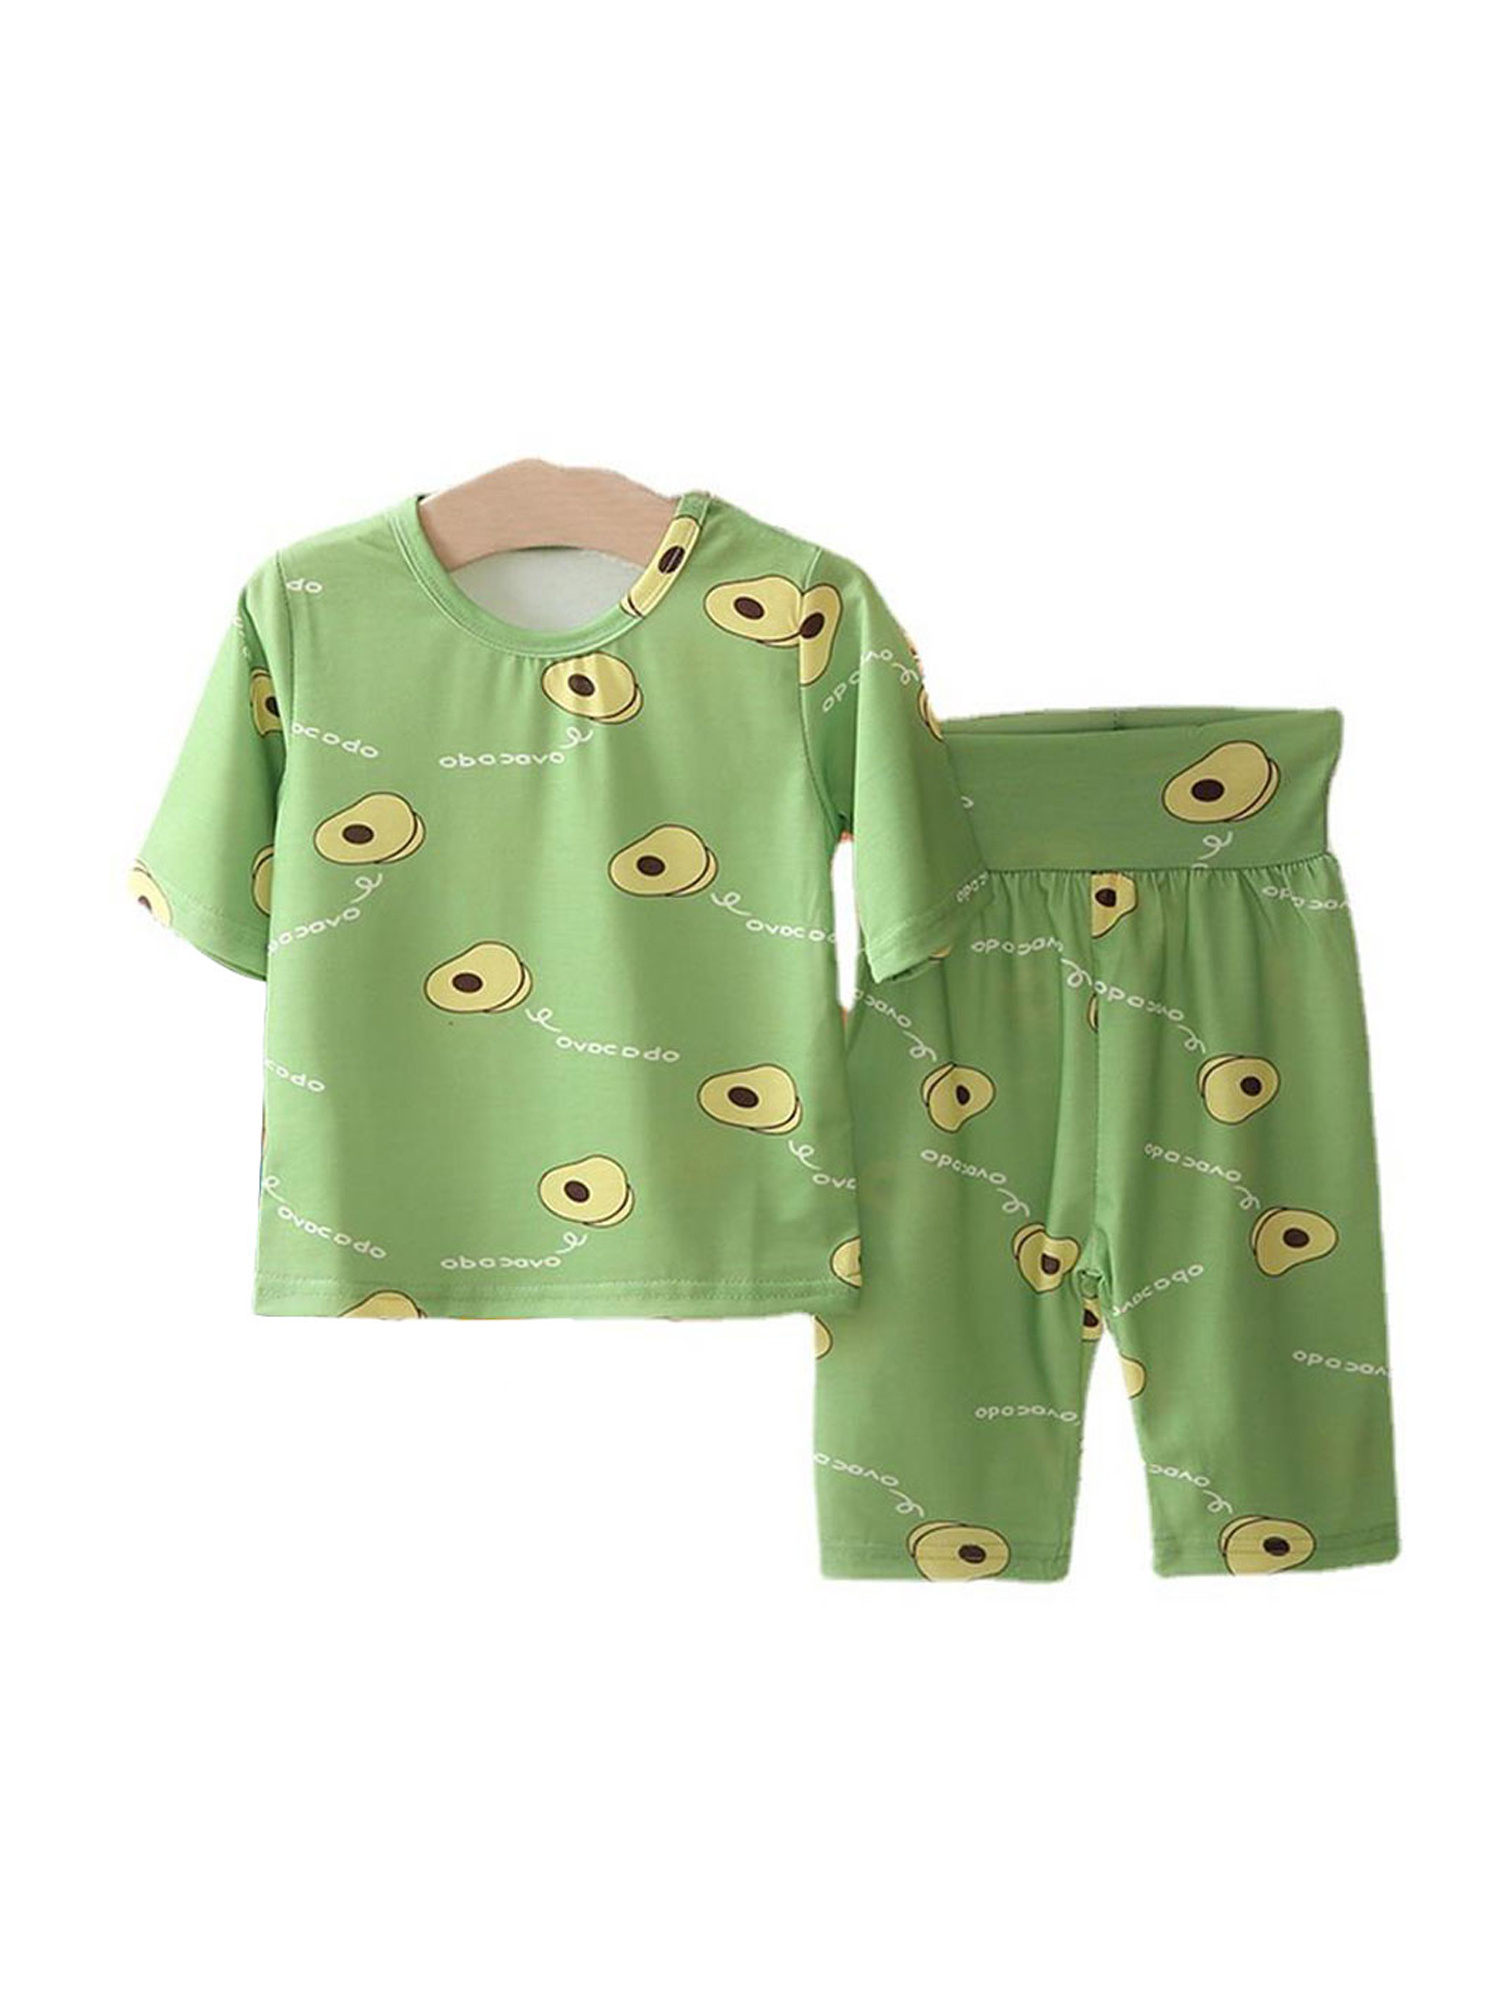 Toddler Kids Boys Girls Cartoon Pajamas Sleepwear Nightwear Pajamas Outfits Sets